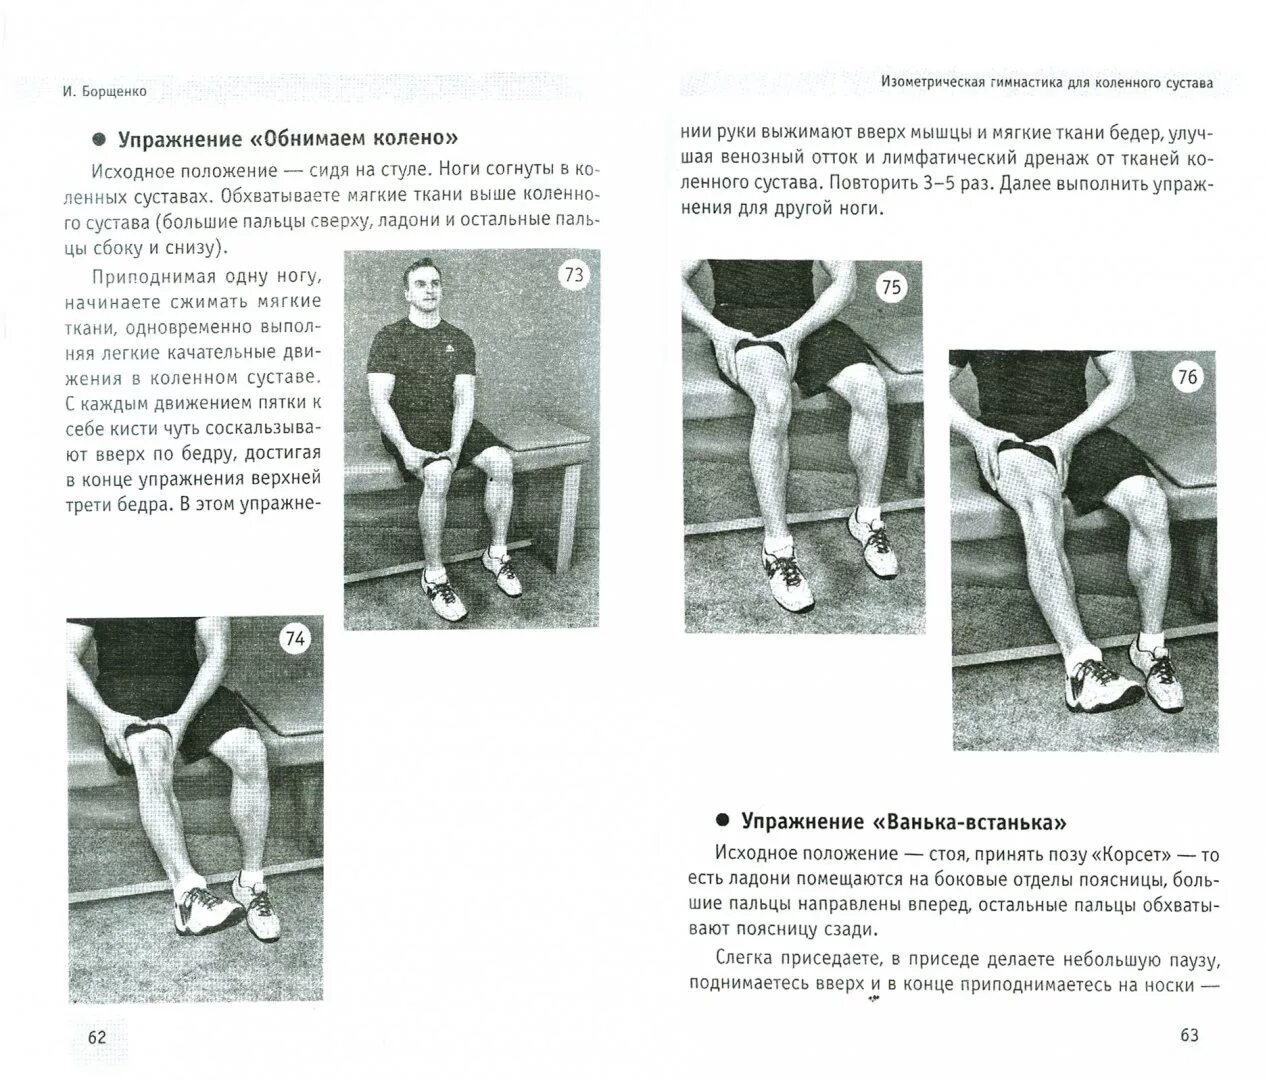 Физкультура для коленных суставов. Упражнения по Борщенко для коленного сустава. Изометрическая гимнастика для коленного сустава. Изометрическая гимнастика для тазобедренного сустава. Изометрические упражнения для коленного сустава.